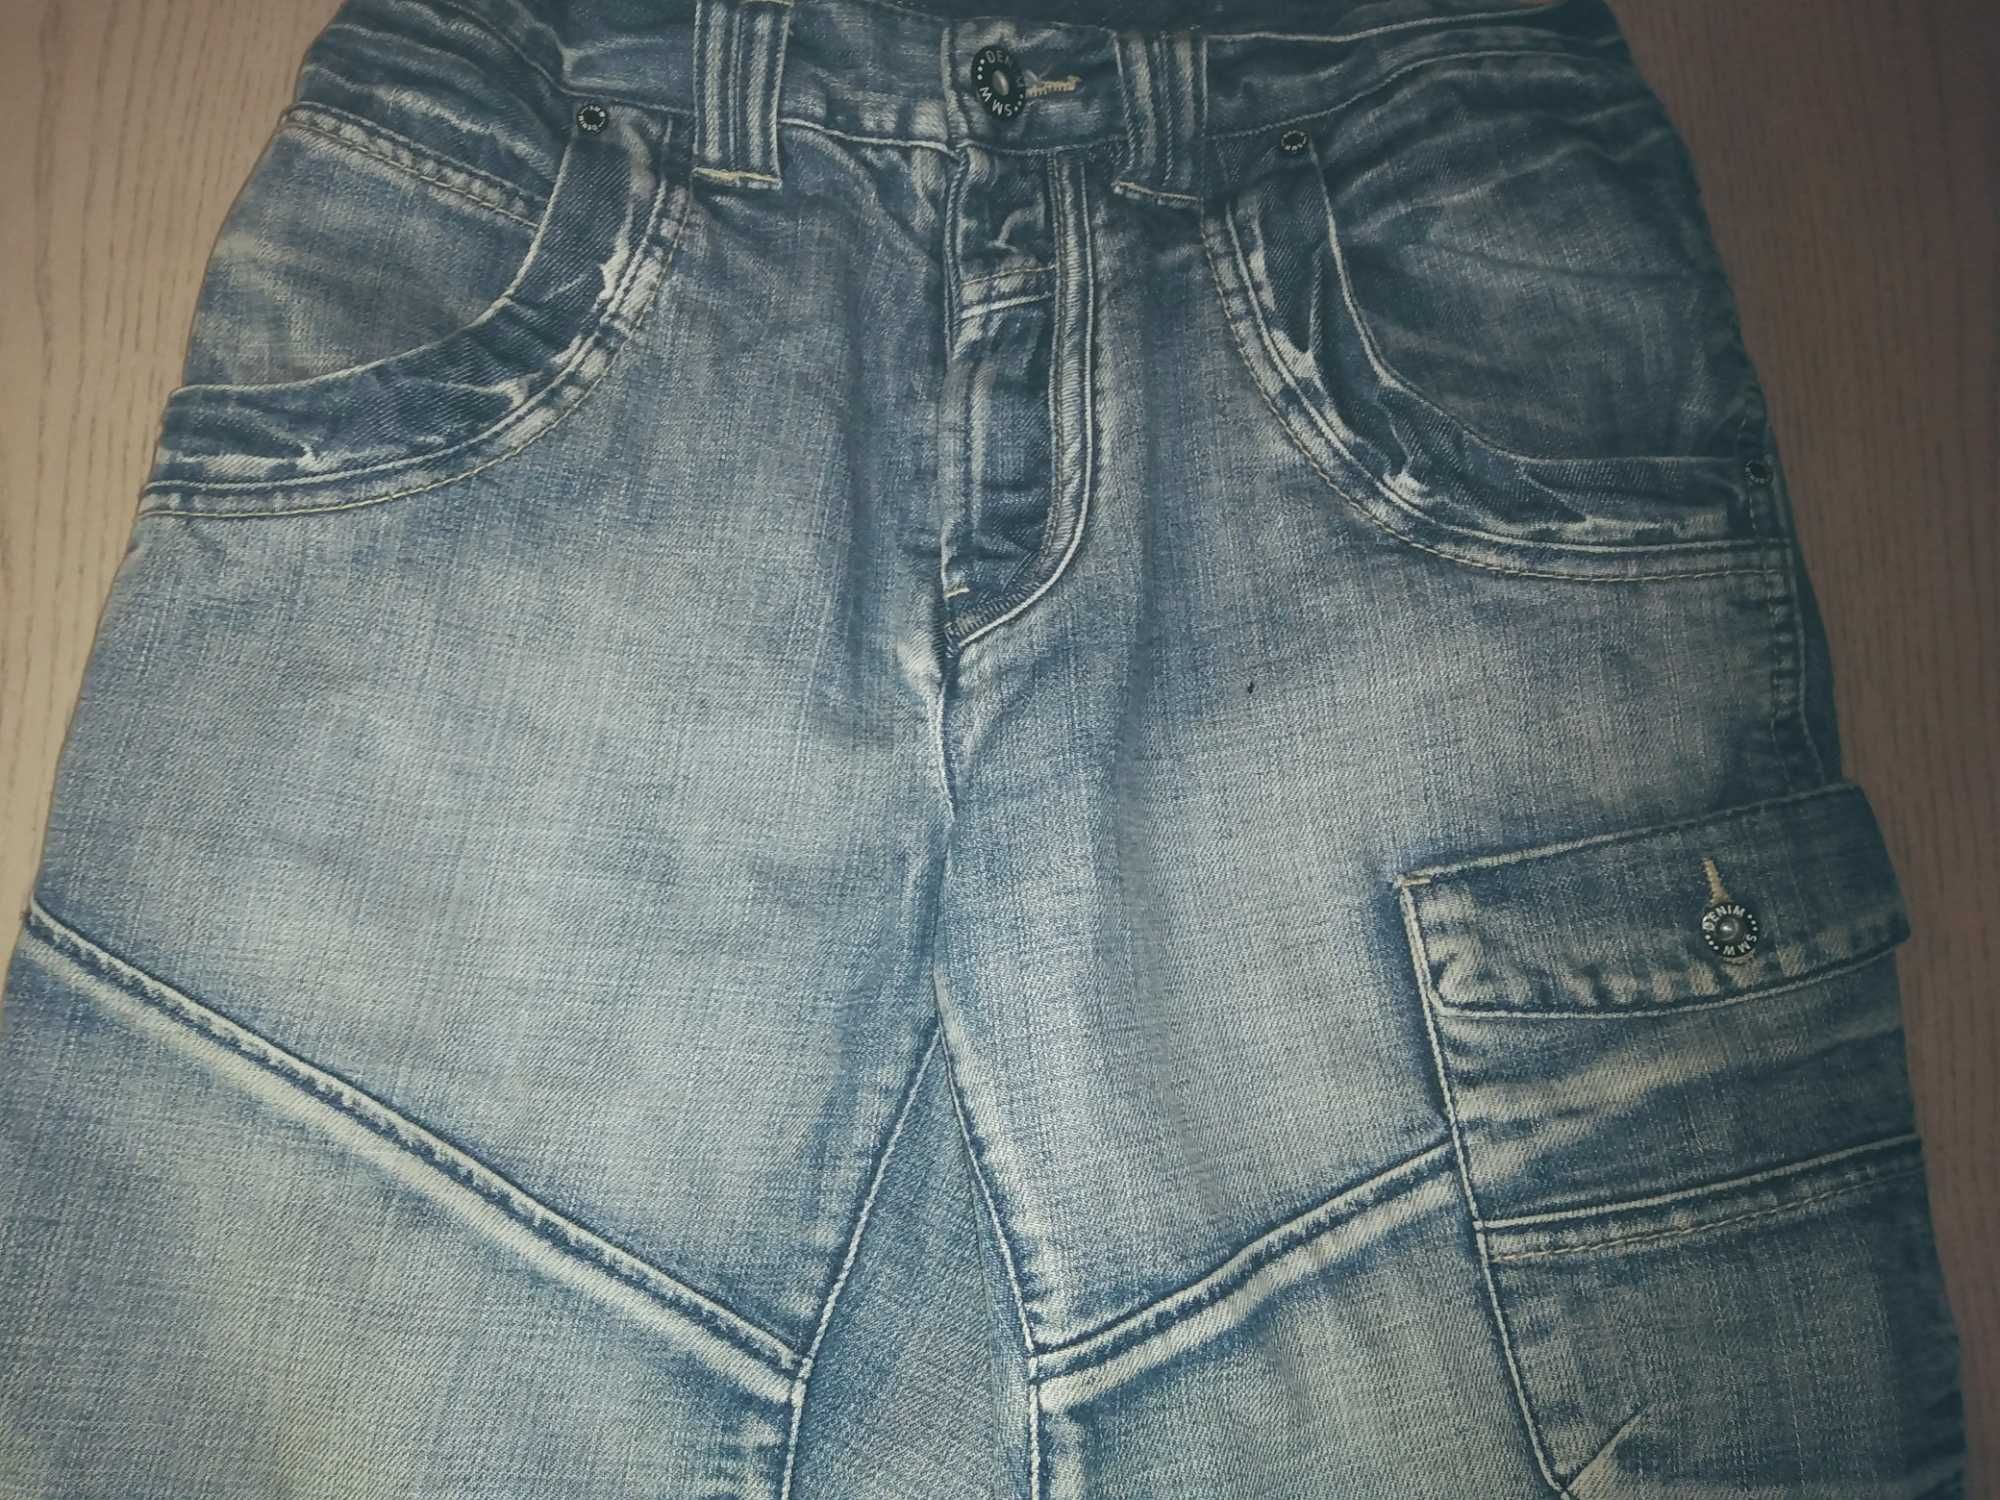 Pantaloni scurti de blugi originali Southern Jeans, M, L, XL, 2XL, 3XL